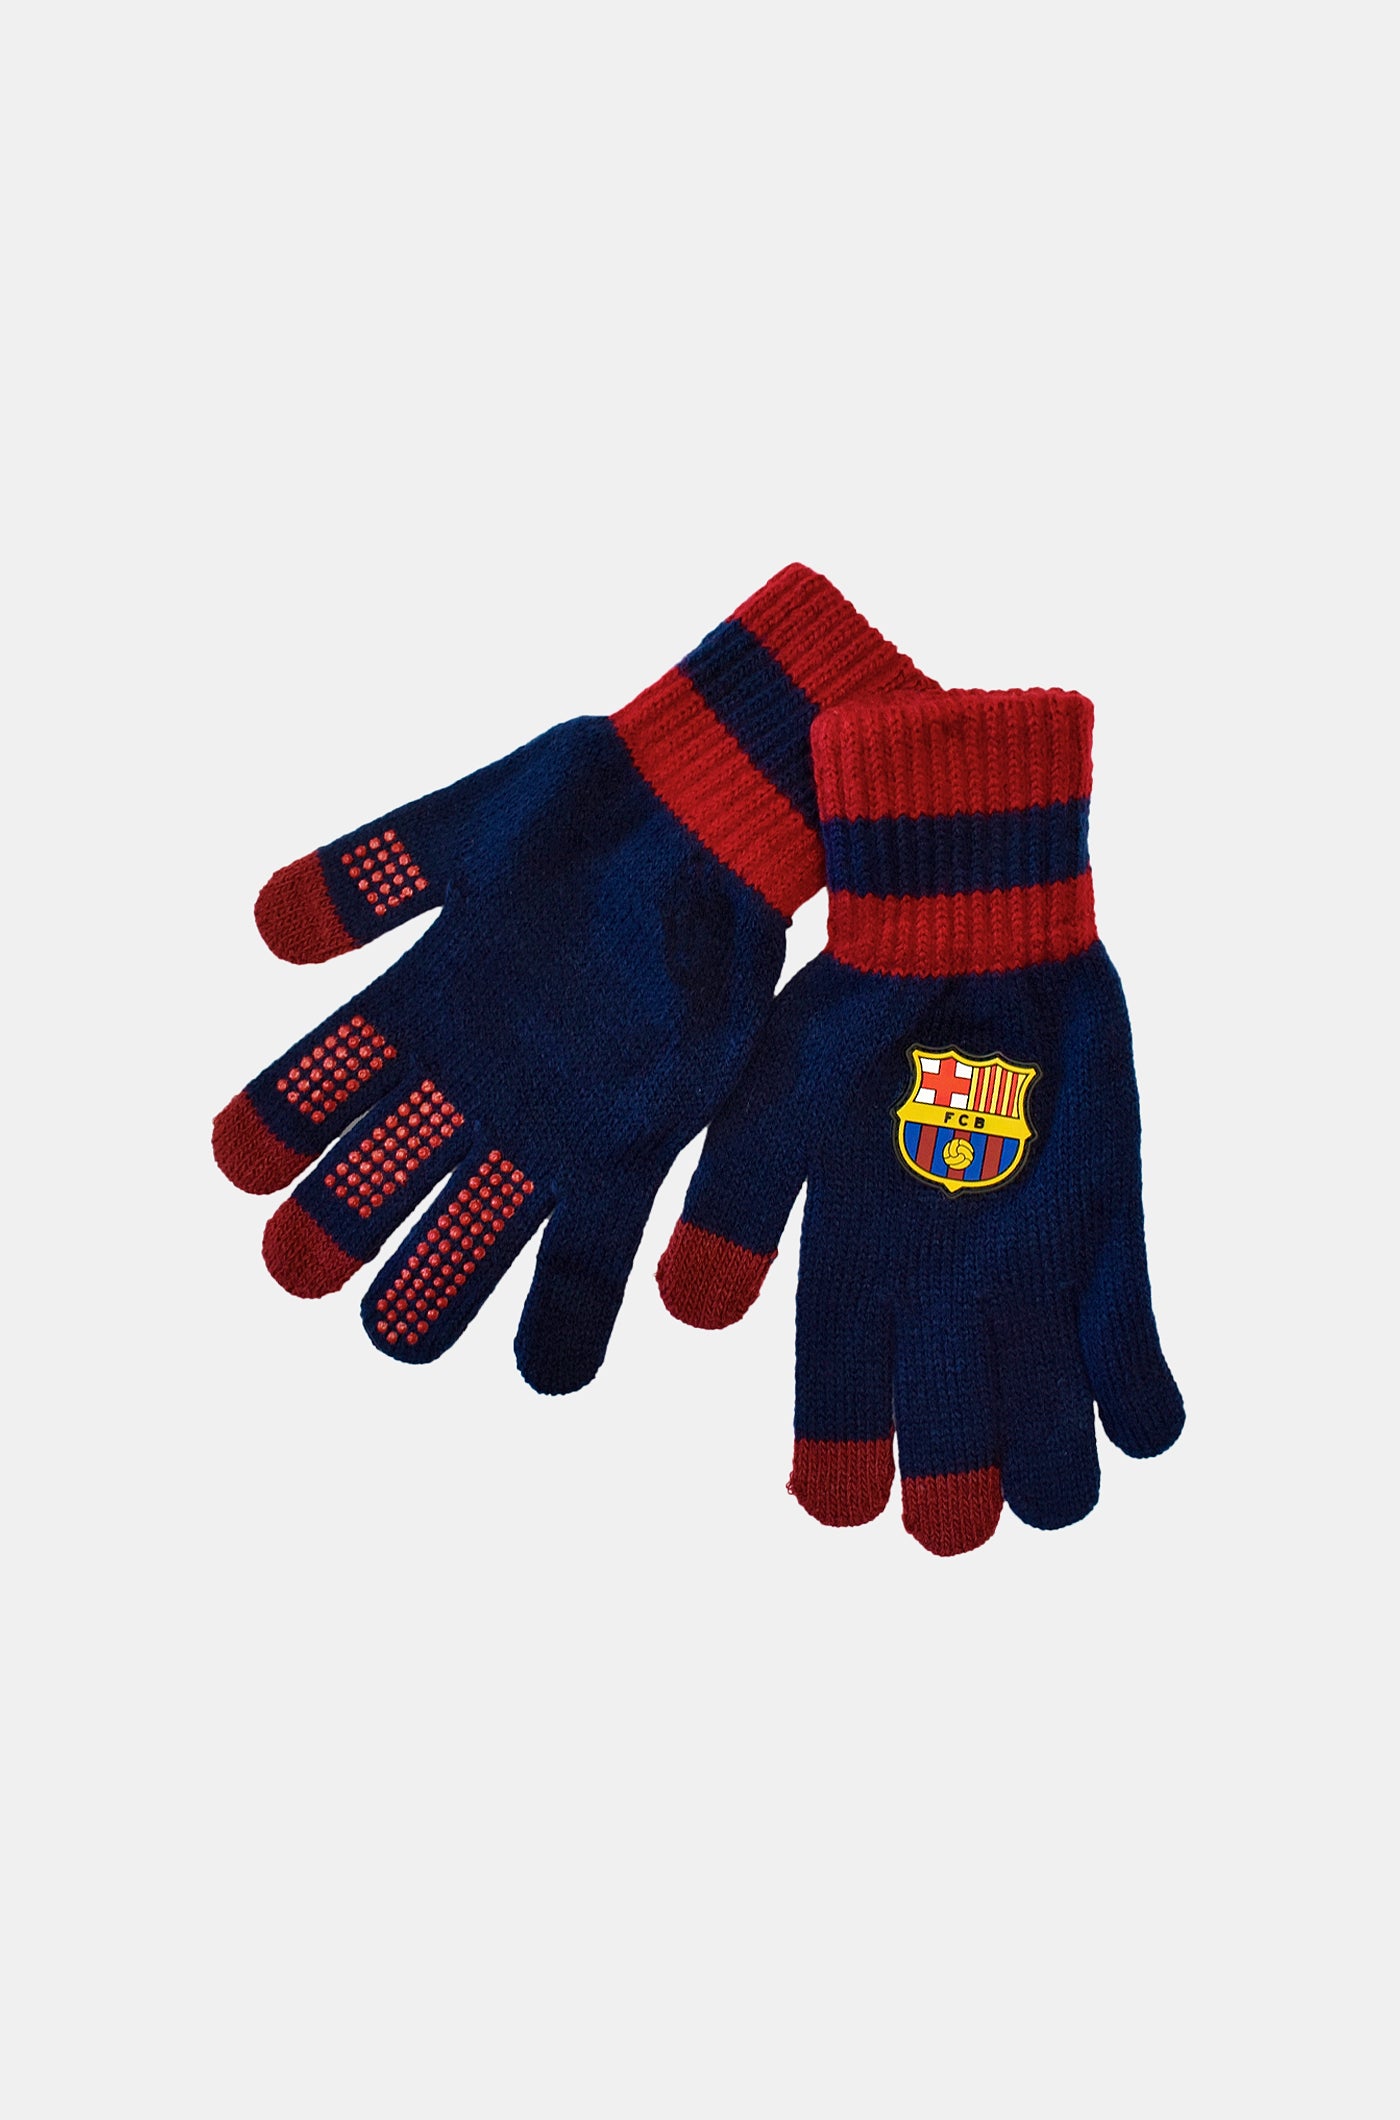 Taktile Handschuhe des FC Barcelona